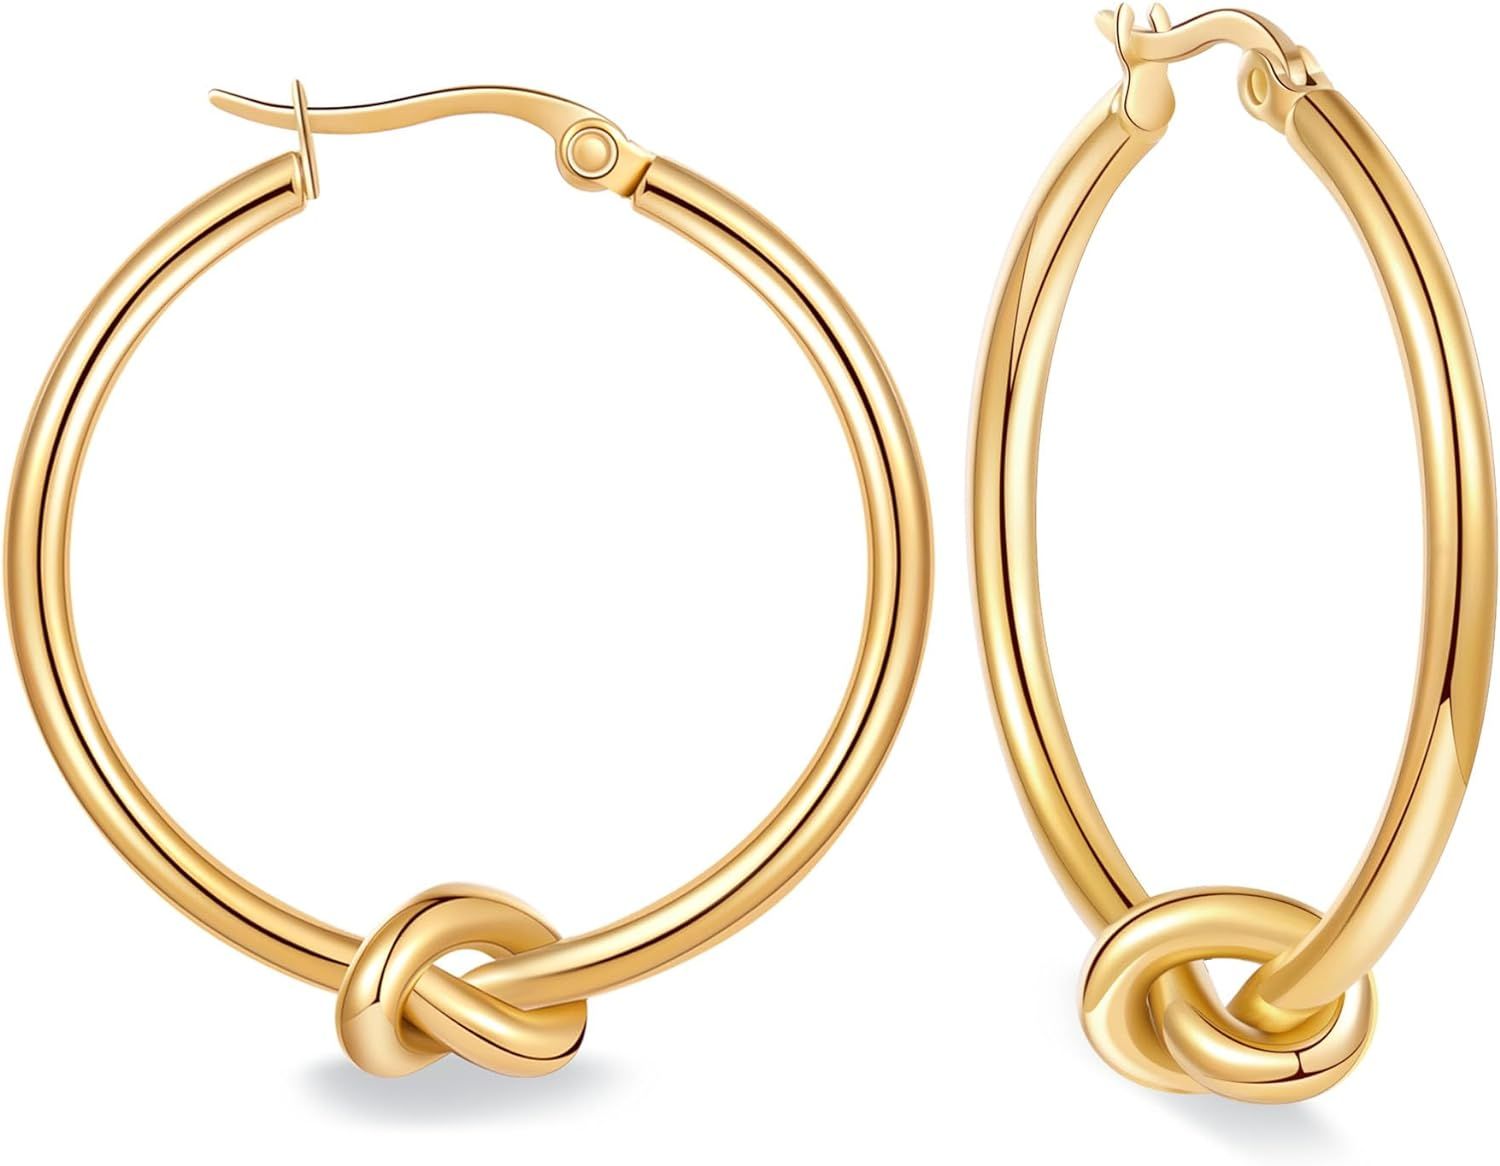 LrioPvy Knot Gold Hoop Earrings for Women Large Gold Knot Hoop Earrings Statement Knot Hoops Hypo... | Amazon (US)